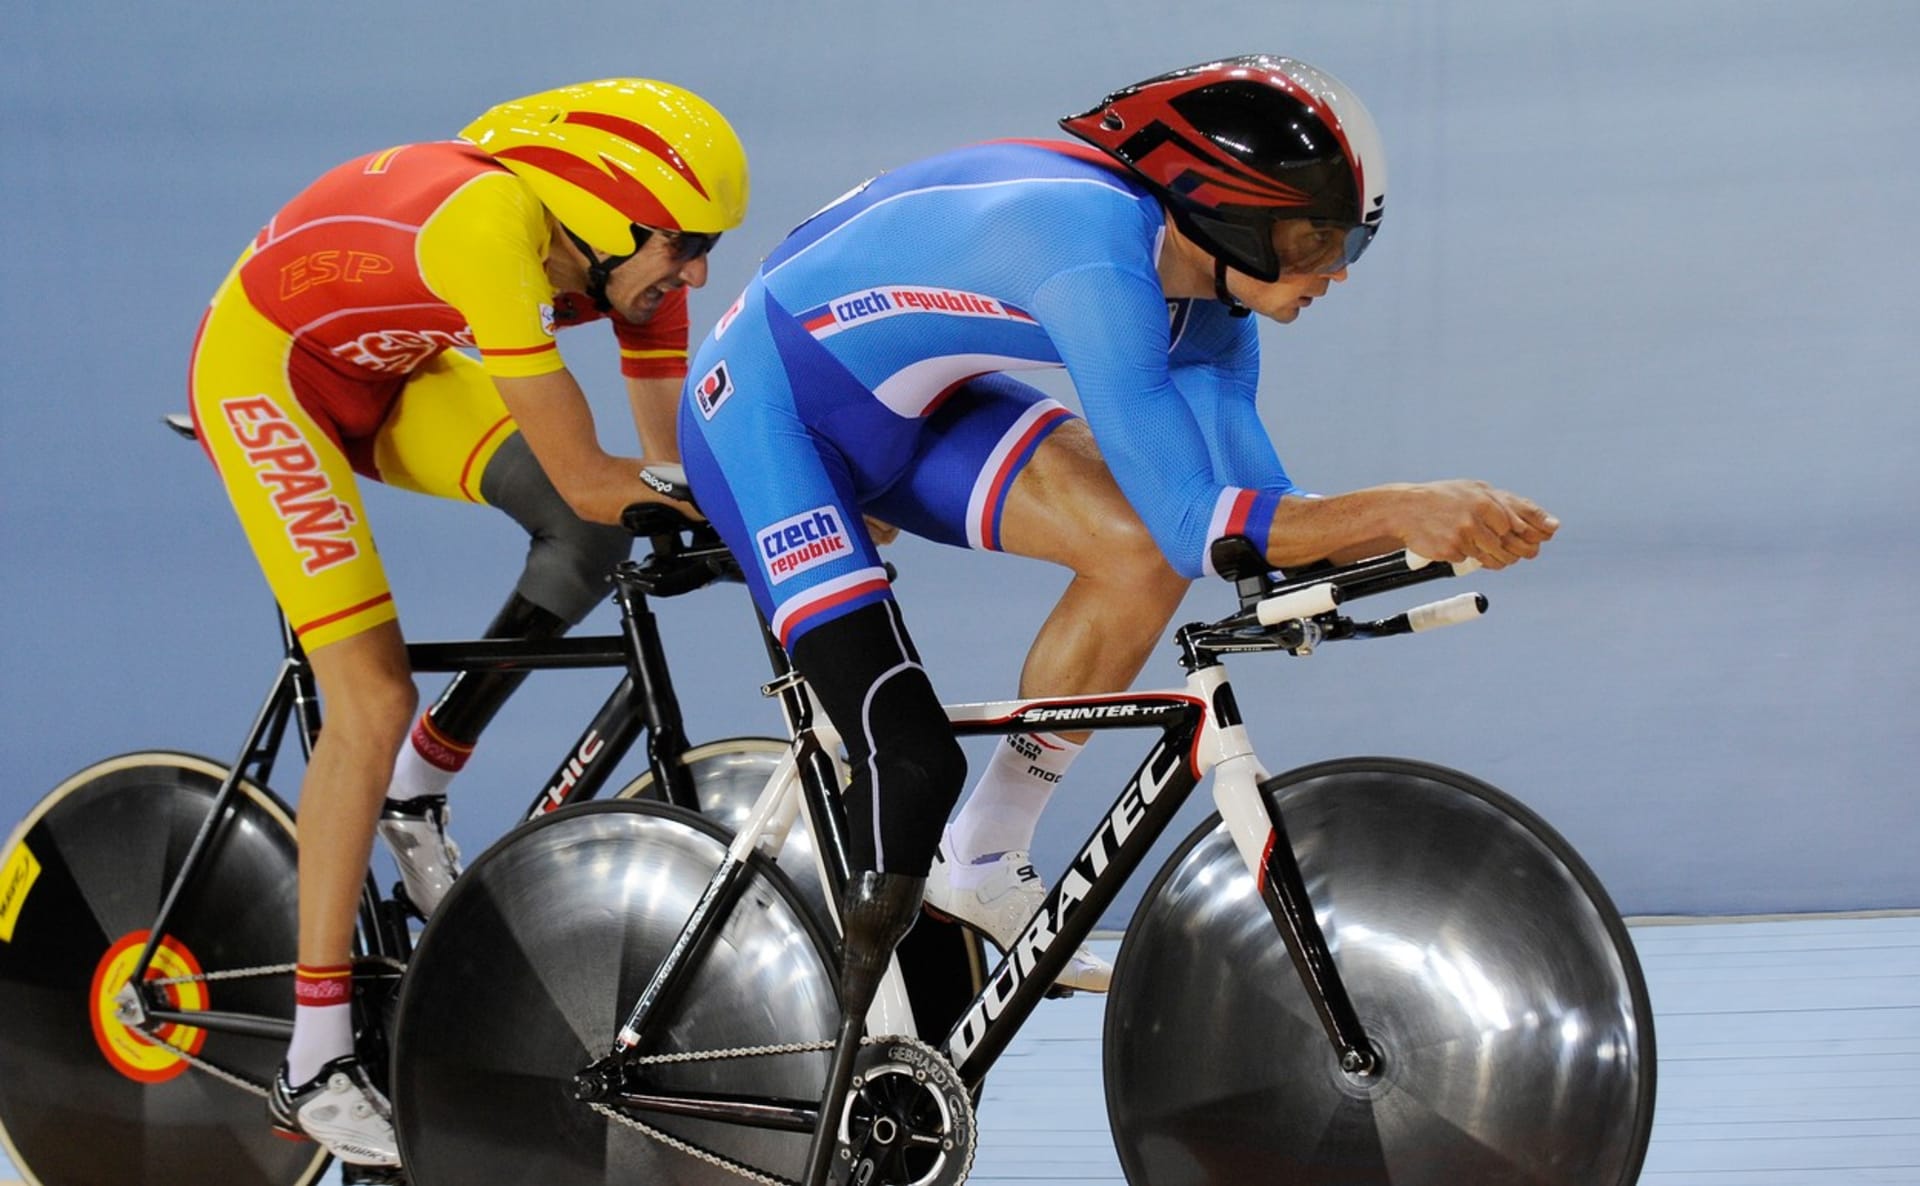 Český reprezentant Jiří Ježek (vpředu v modrém) v souboji se Španělem Robertem Alcaidem při závodě v dráhové cyklistice na paralympijských hrách 2012 v Londýně